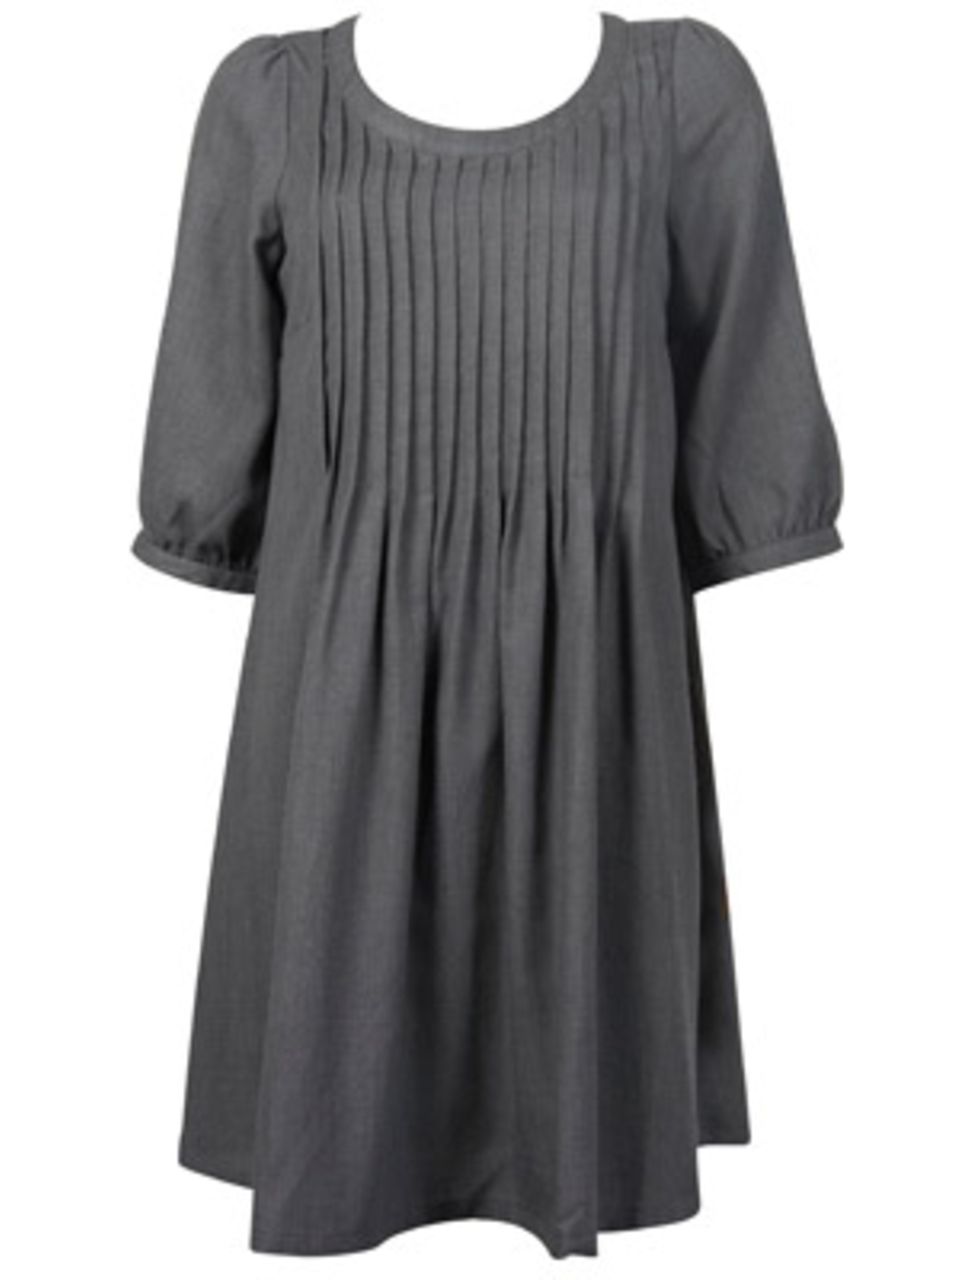 Graues Kleid mit halbem Arm und Plissées am Rundhalsausschnitt von Vero Moda, ca. 50 Euro.